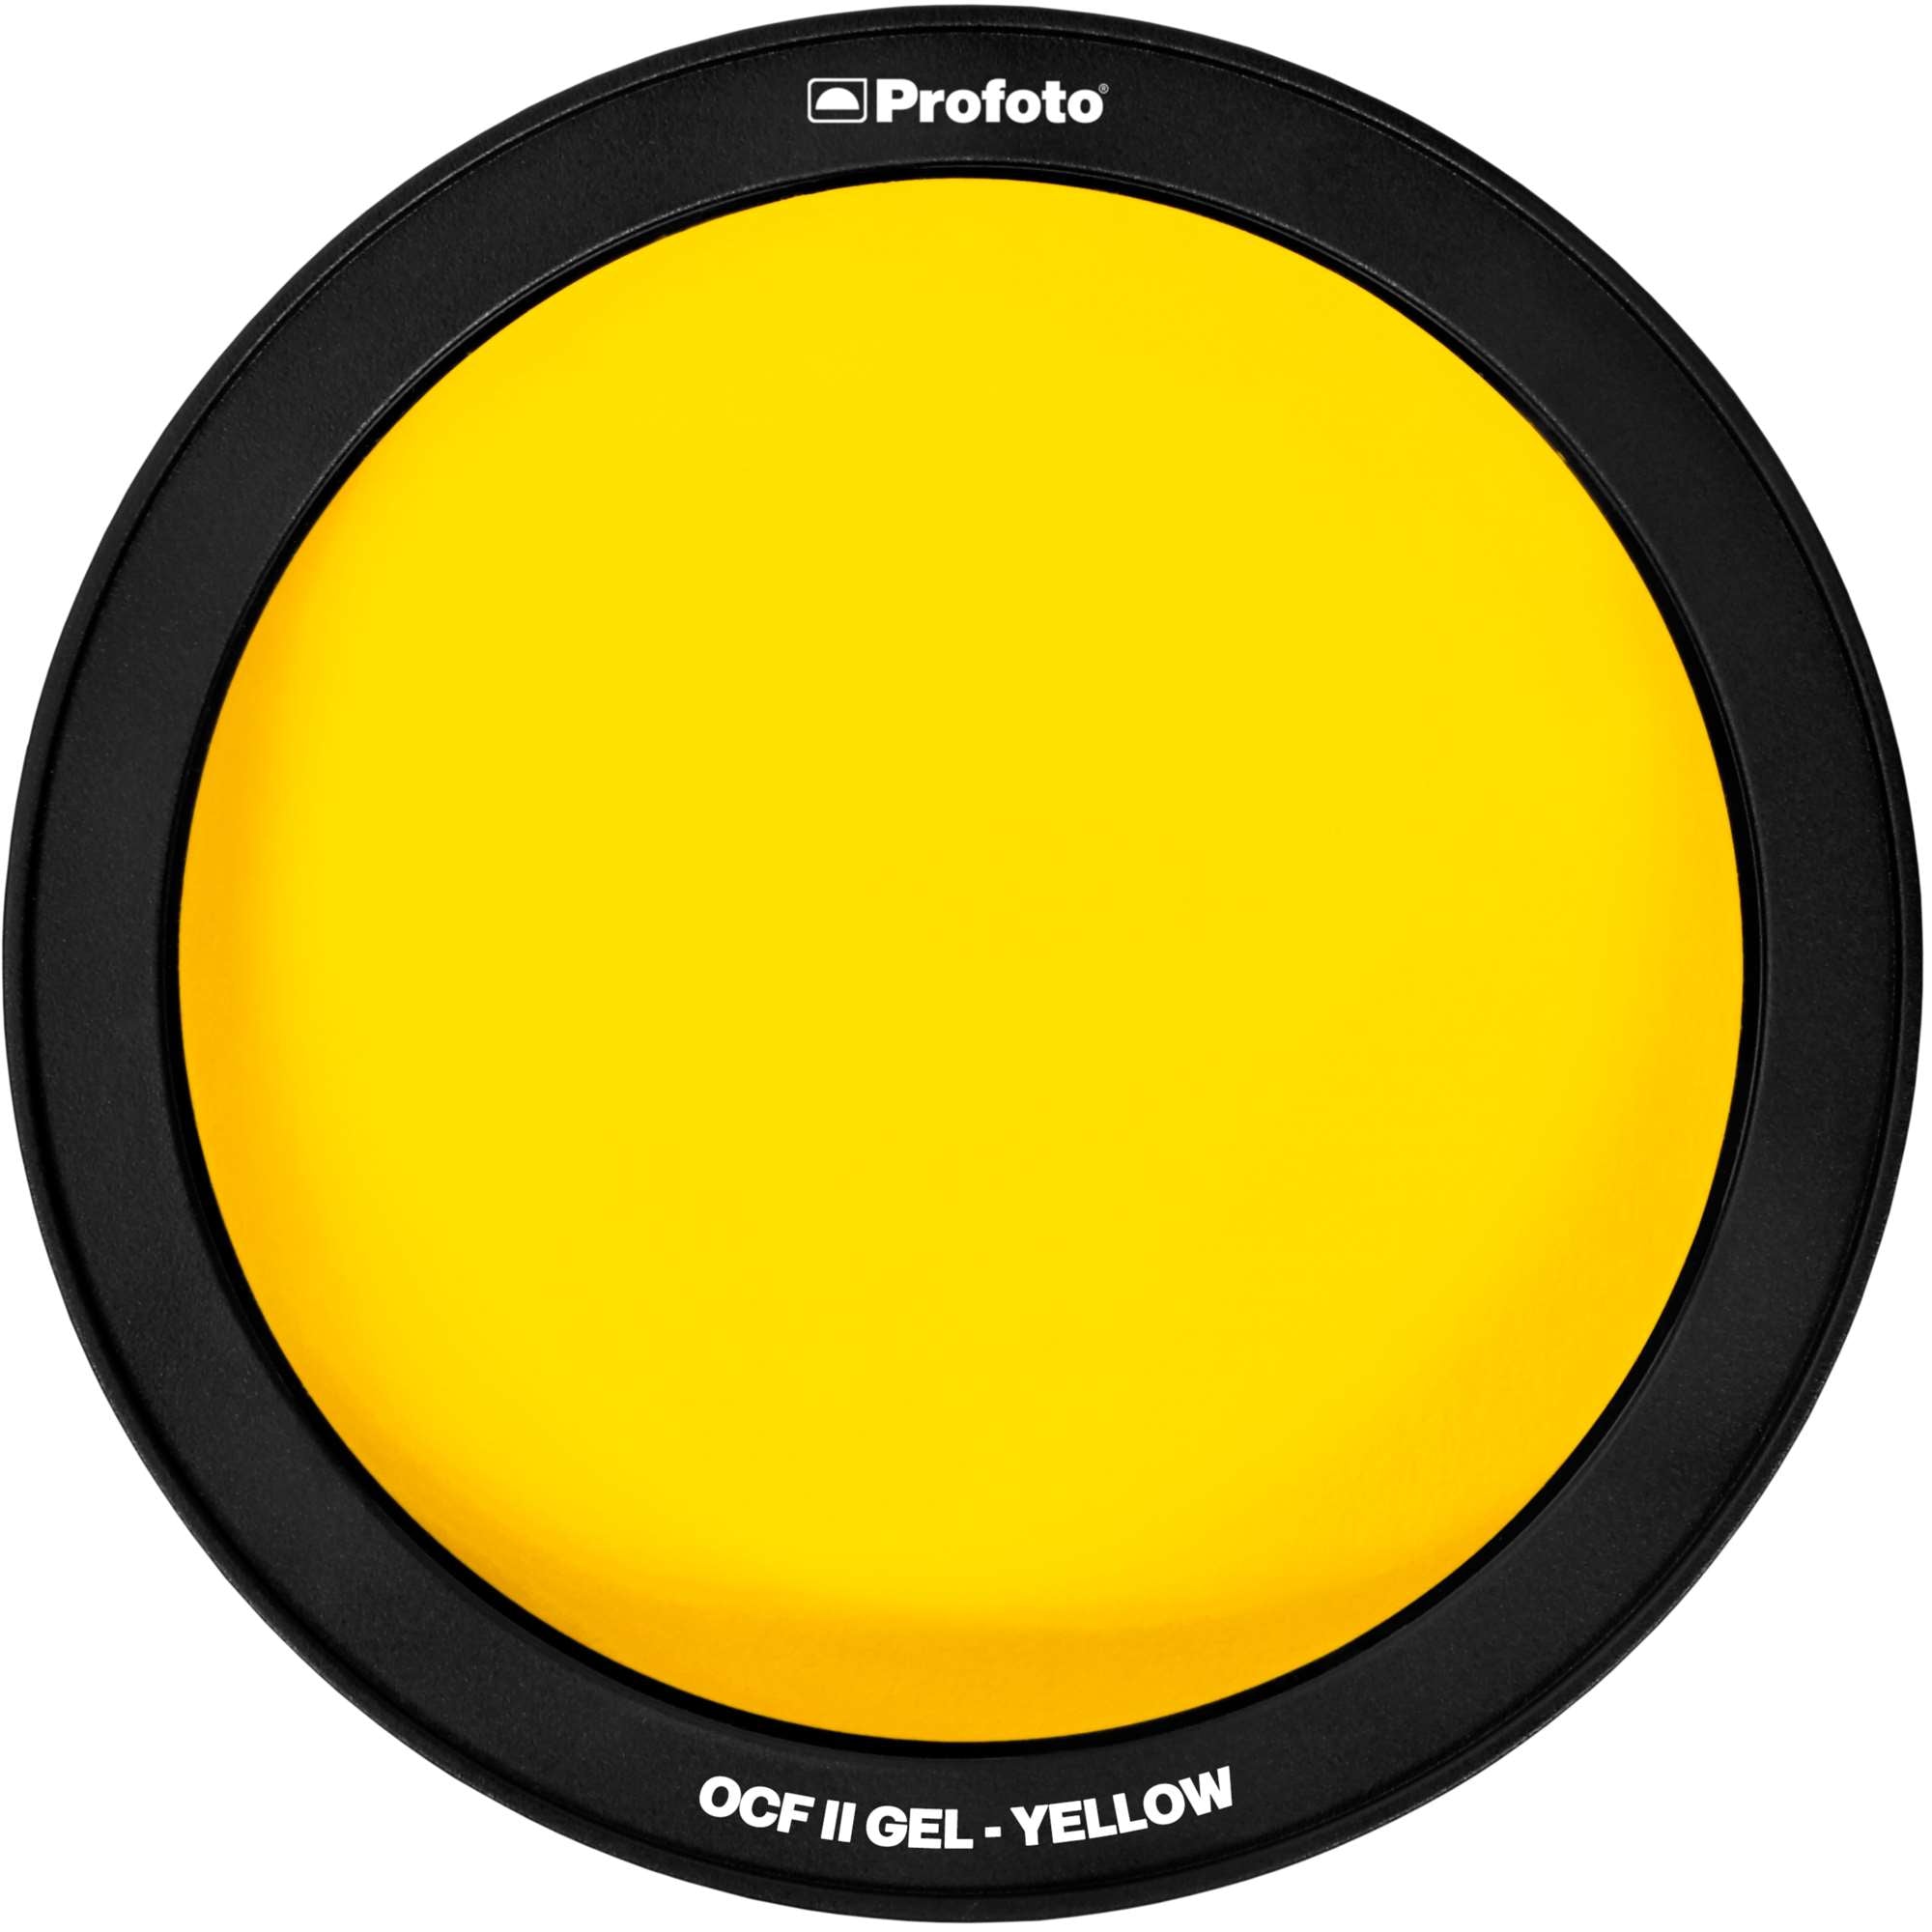 OCF II Gel - Yellow